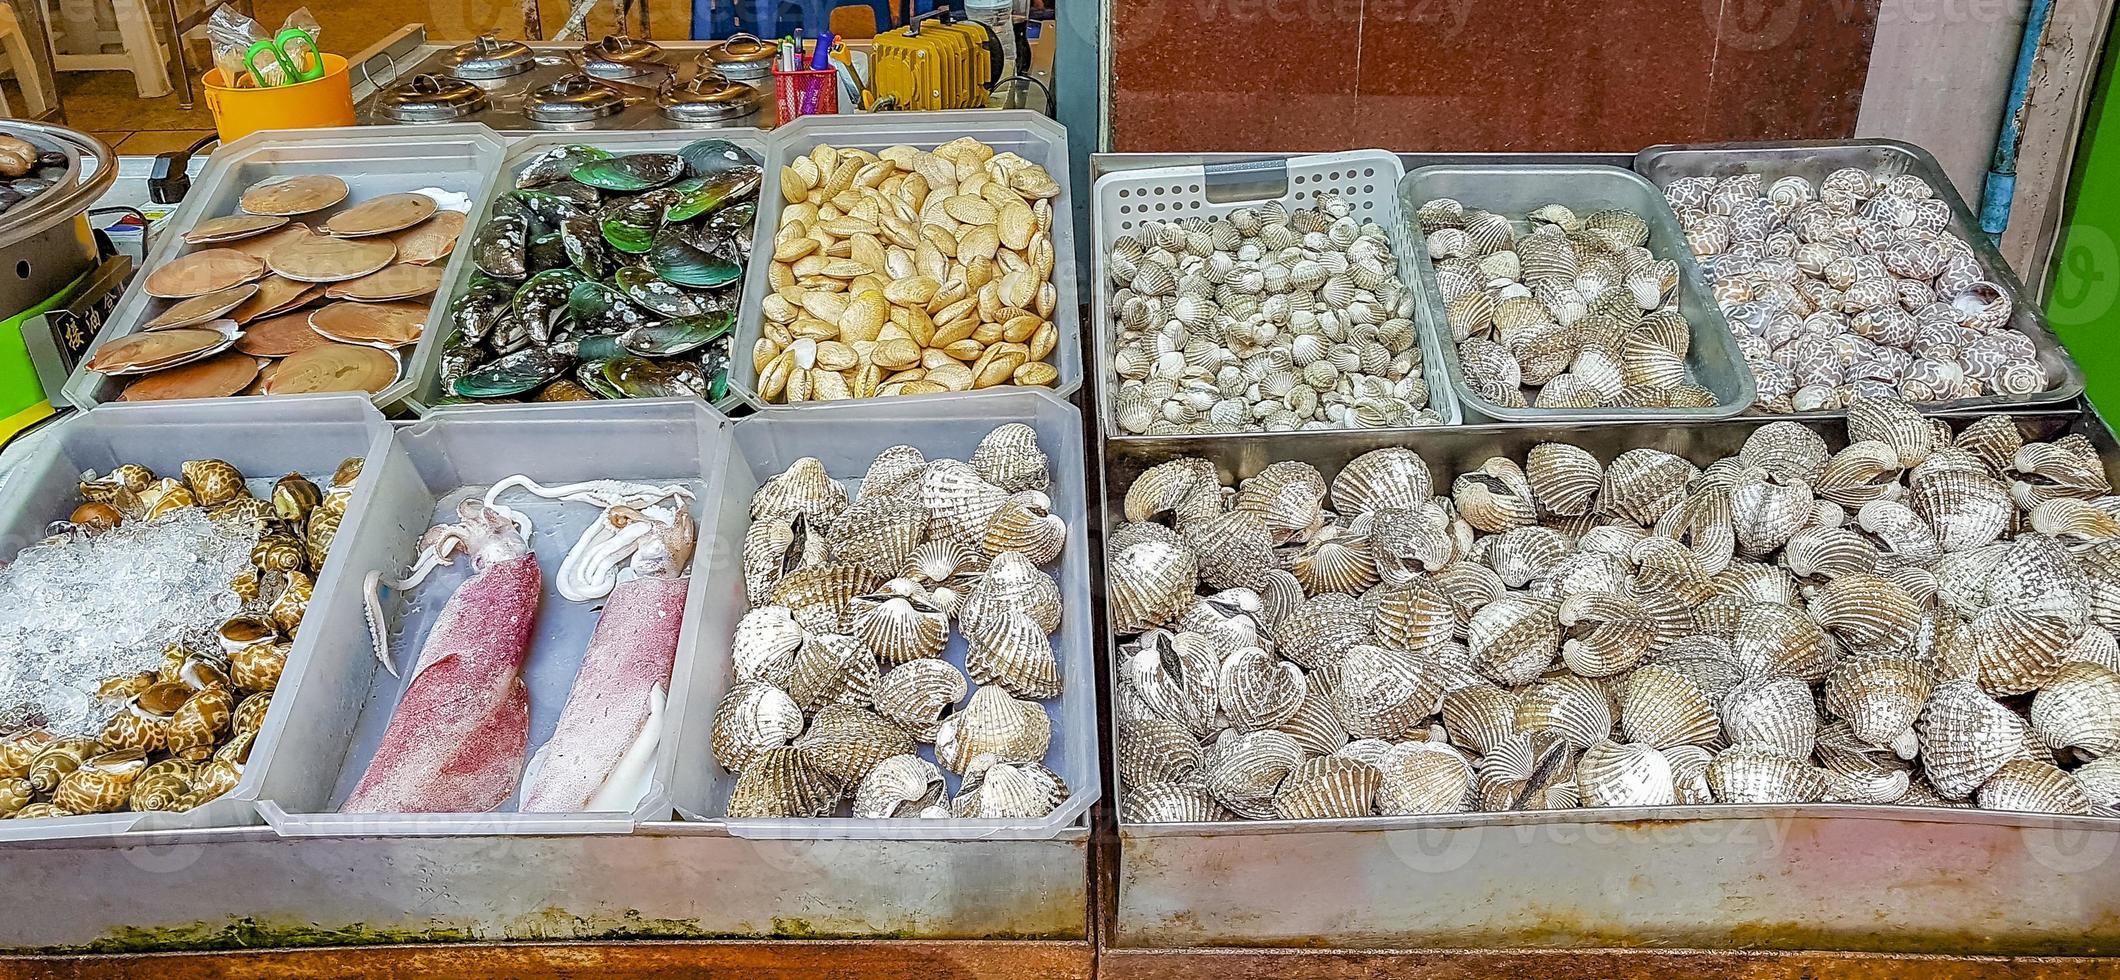 meeresfrüchte tintenfische krabben schalentiere krebstiere thailändischer markt chinastadt bangkok. foto